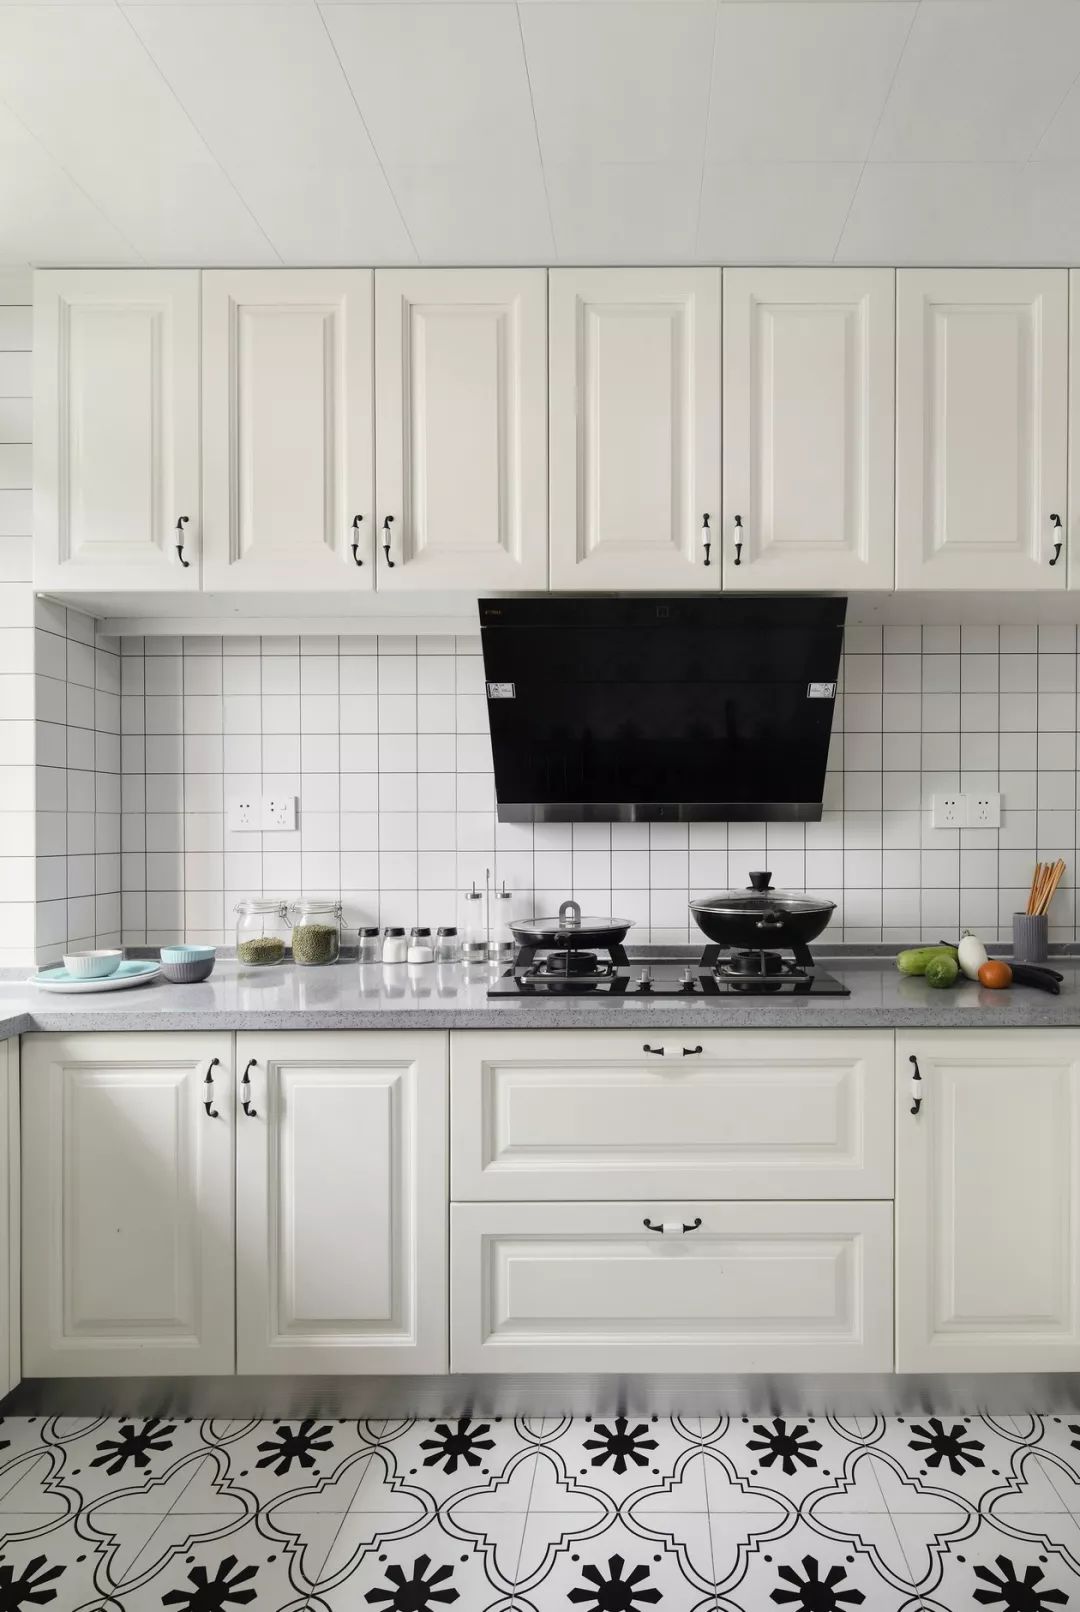 白格子砖,灰色台面和白色实木柜门,厨房干净整洁,清新文艺.